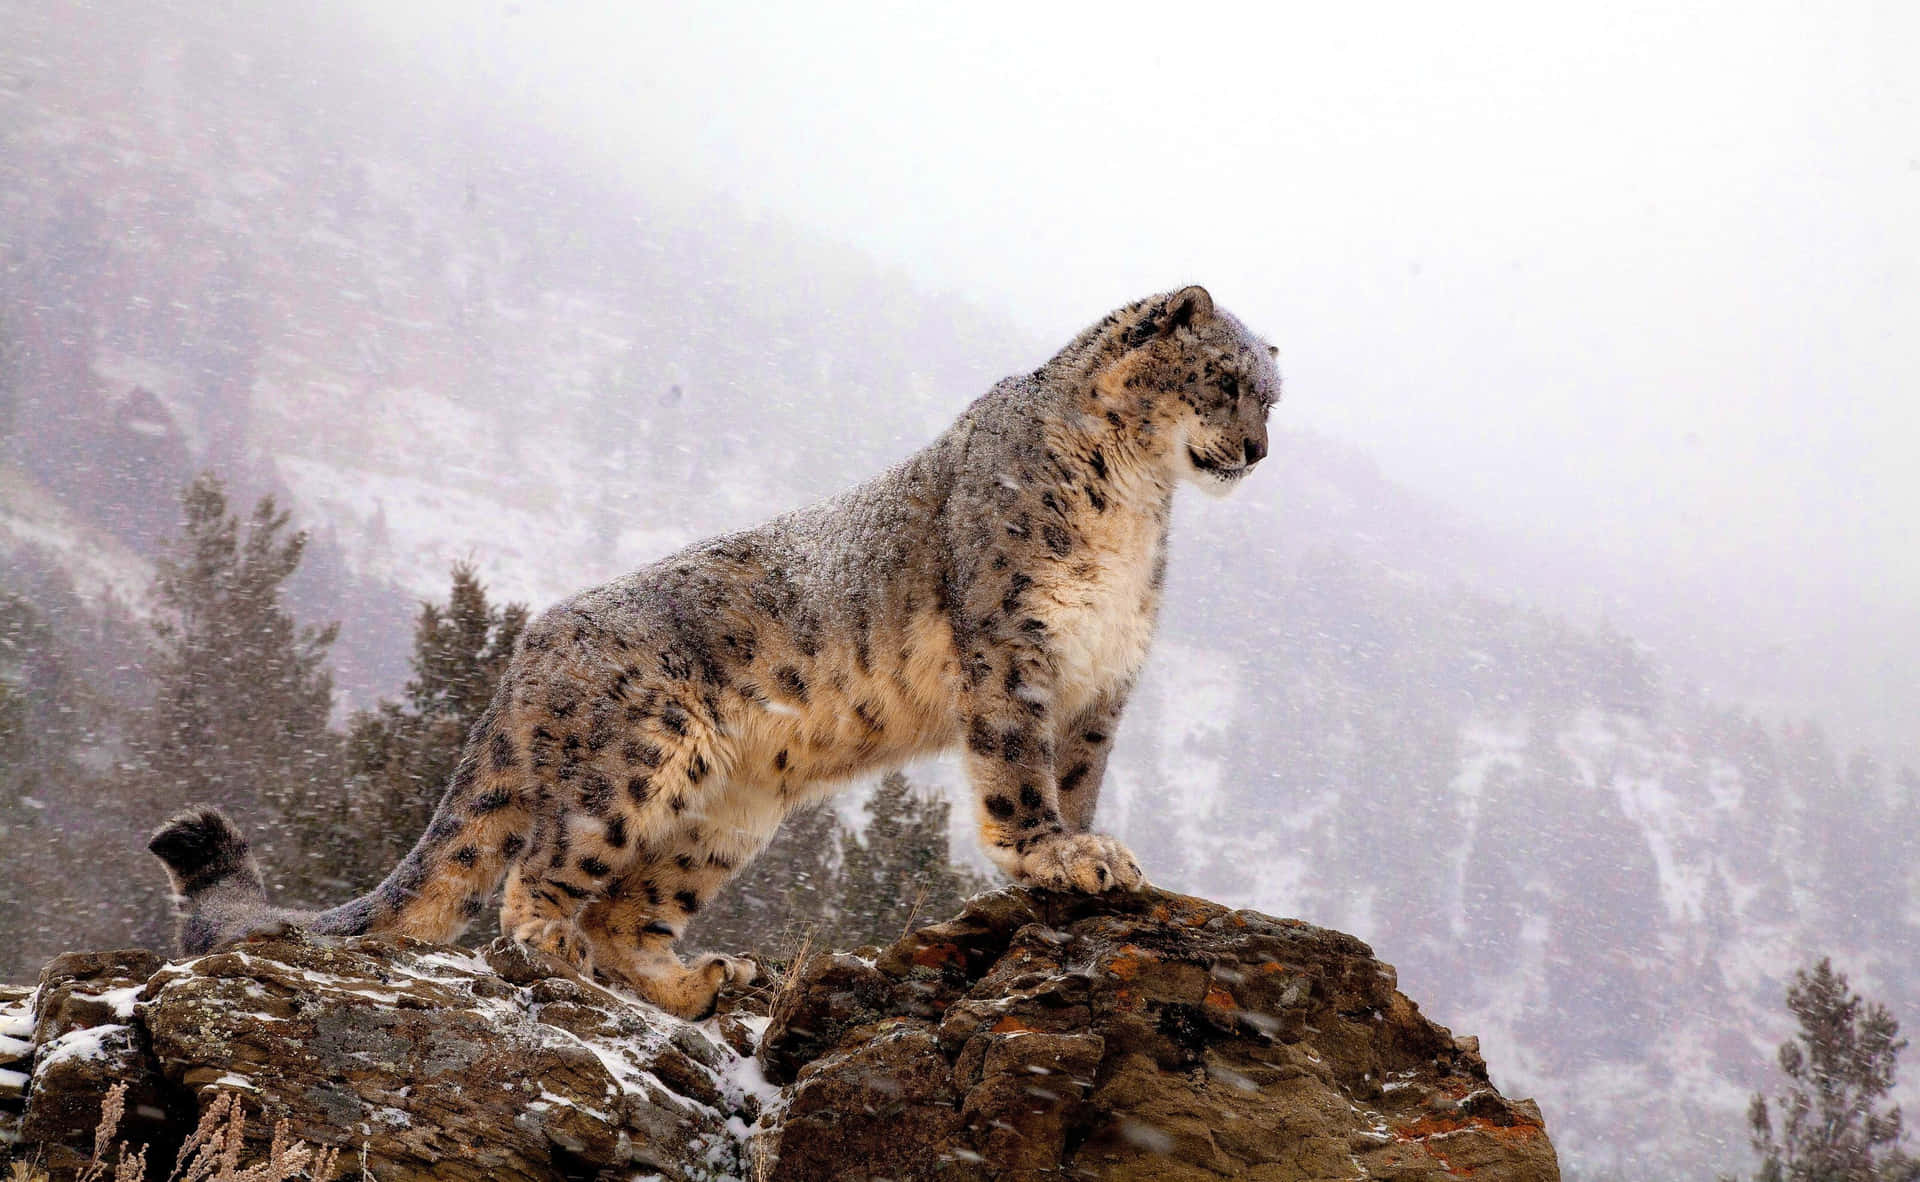 En sneleopard der stalker sit bytte i de sne-dækkede bjerge. Wallpaper